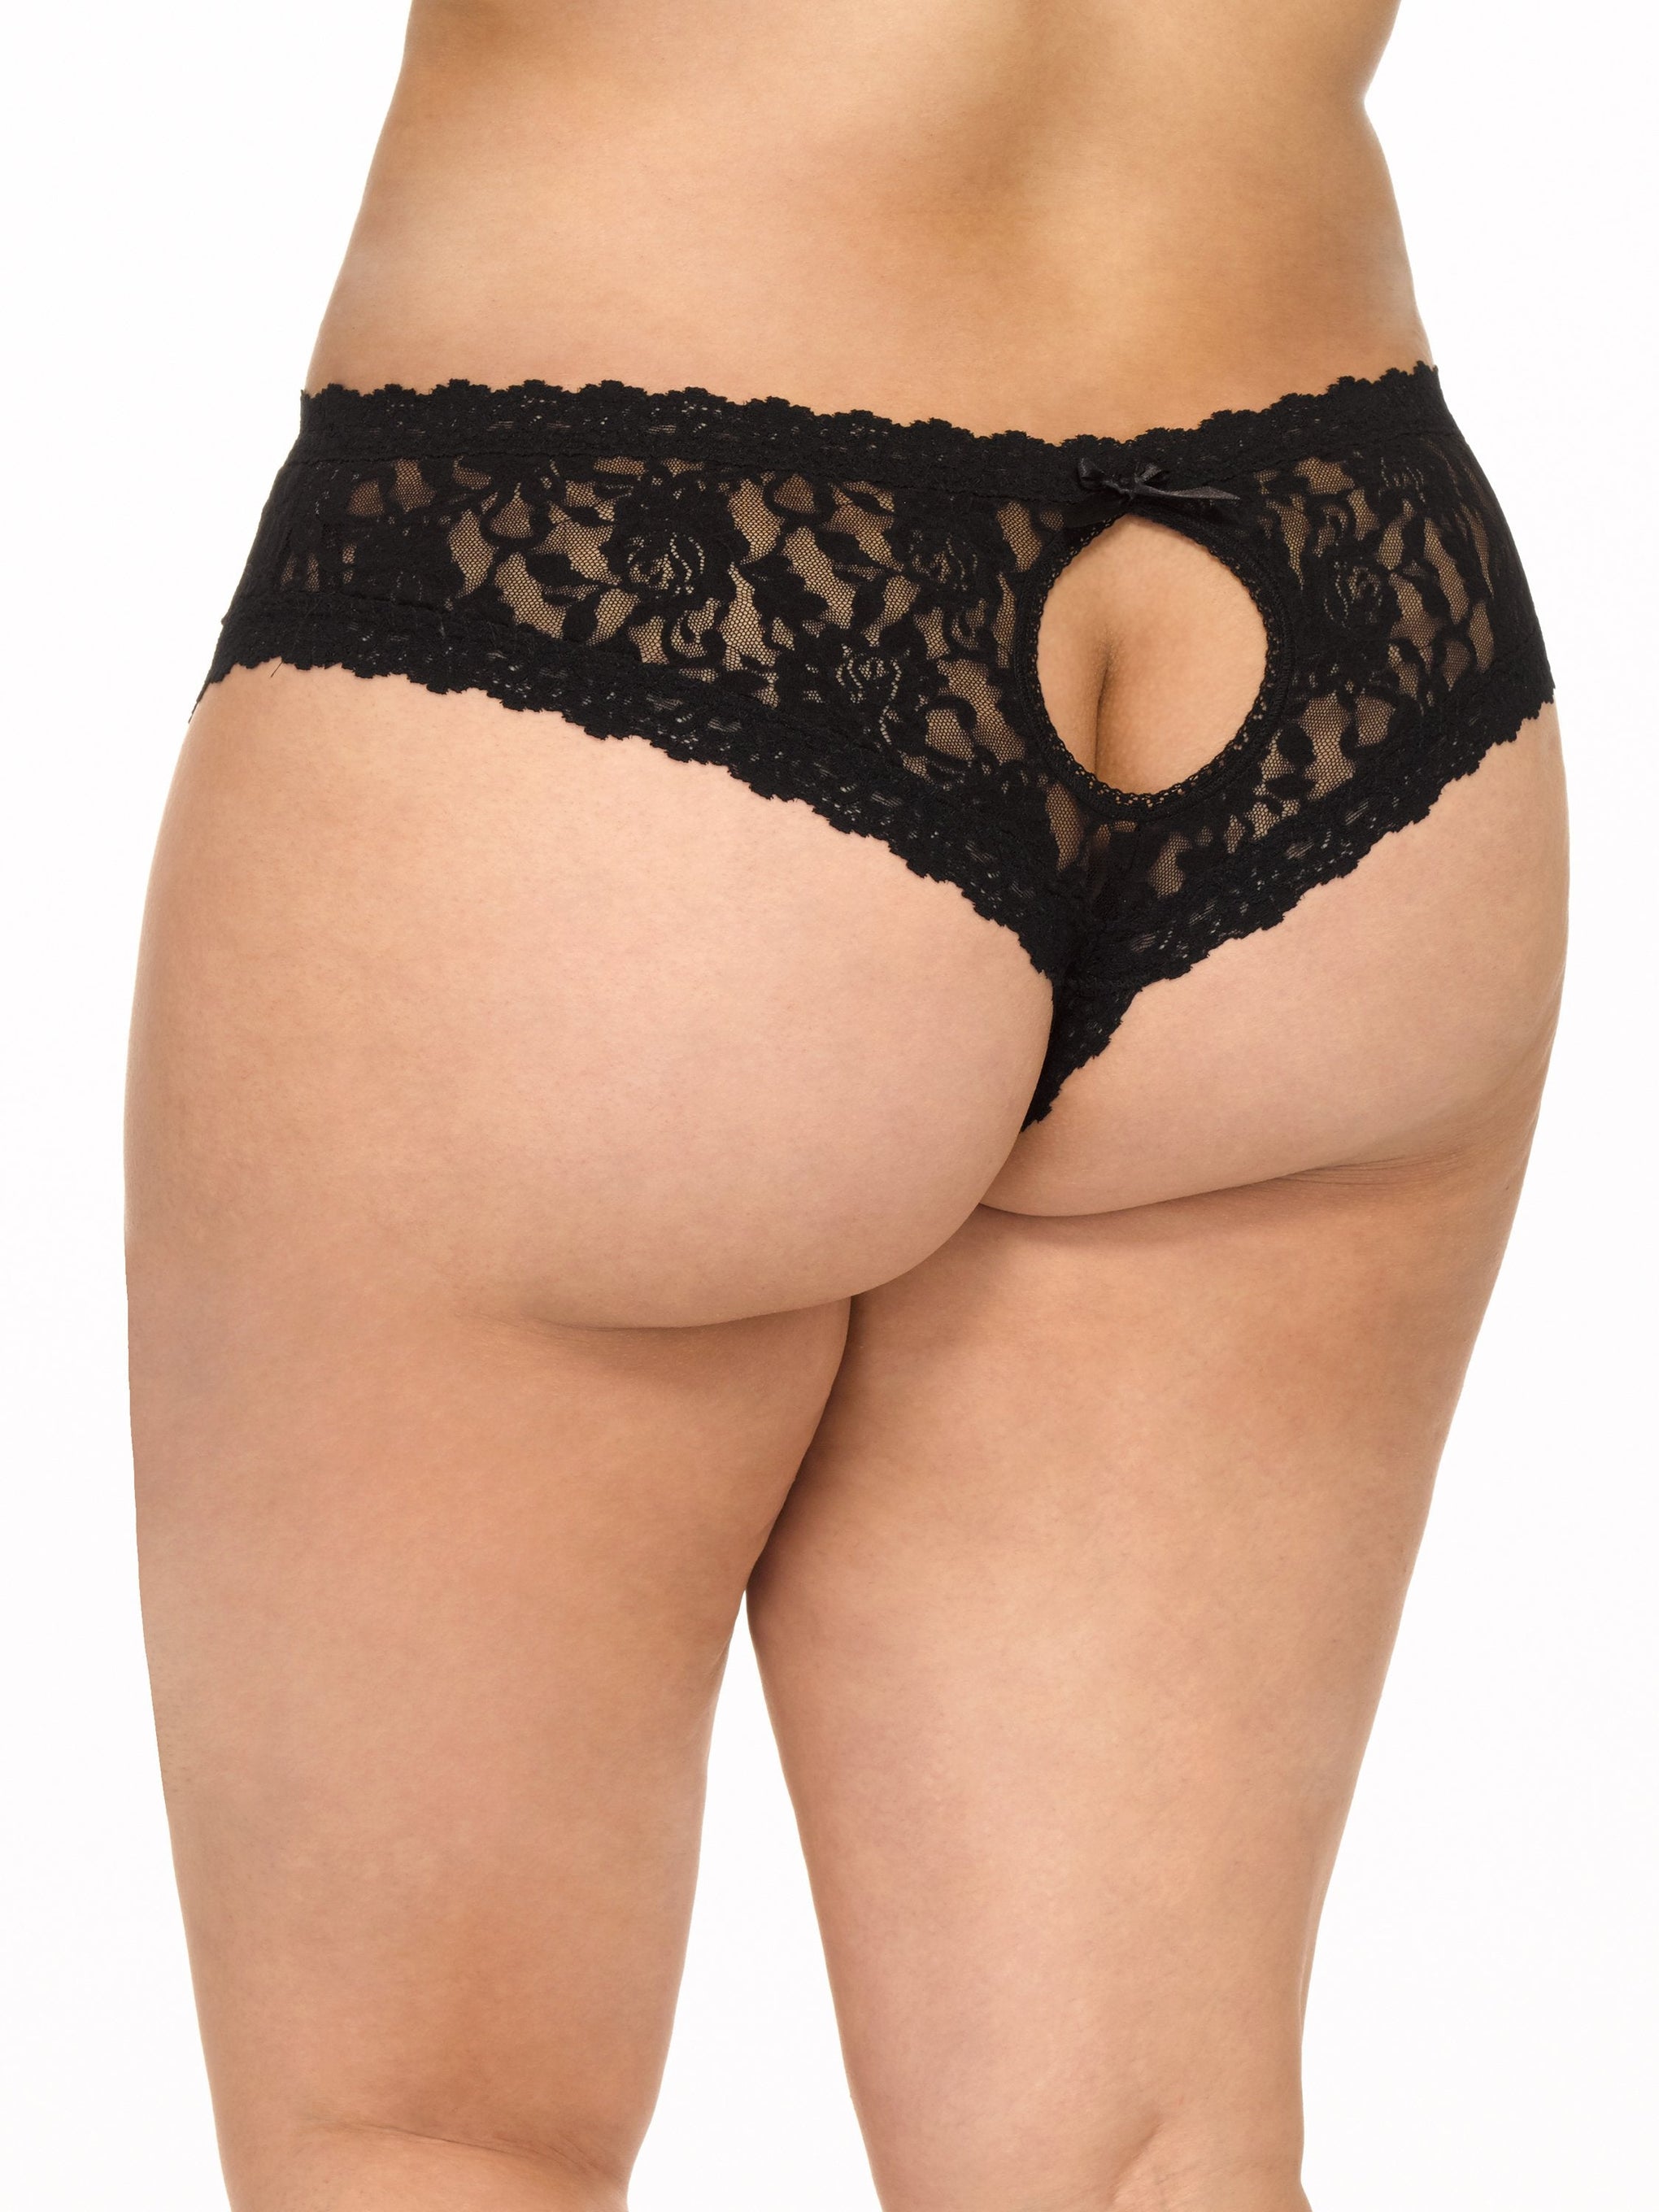 Plus Size Open Crotch Panties For Women Transparent Lace Underwear  Sleepwear Lingerie 5 Colors Available